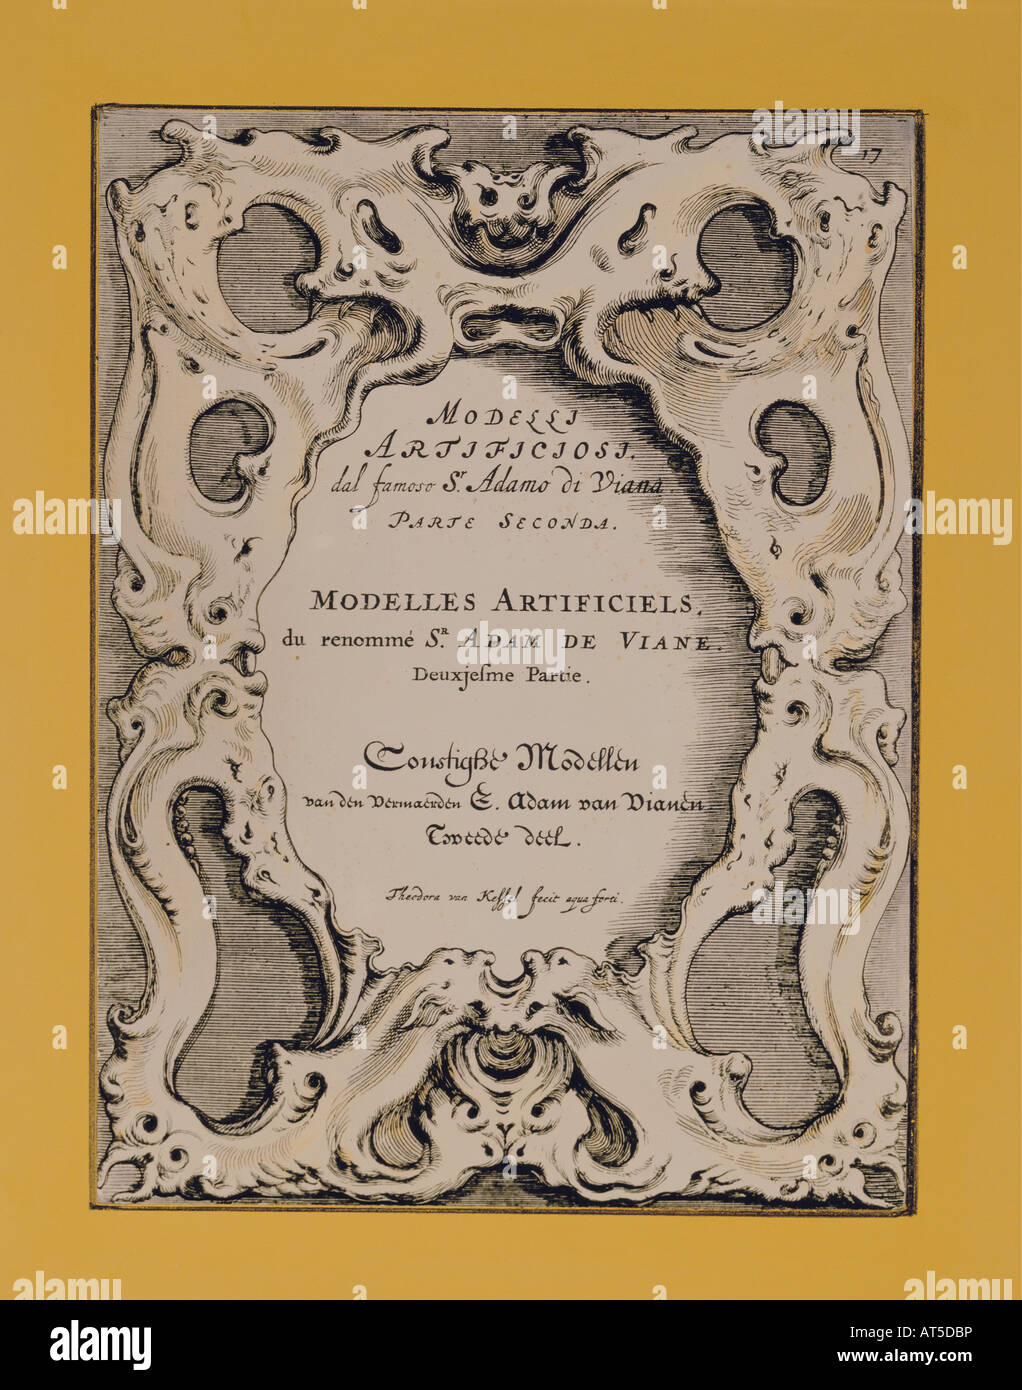 Bildende Kunst, Manierismus, Kupferstich, Titelseite, bin odelli Artificiosi', von Adam van Vianen (1568 - 1627), privaten Sammlung, Artist's Urheberrecht nicht gelöscht werden Stockfoto